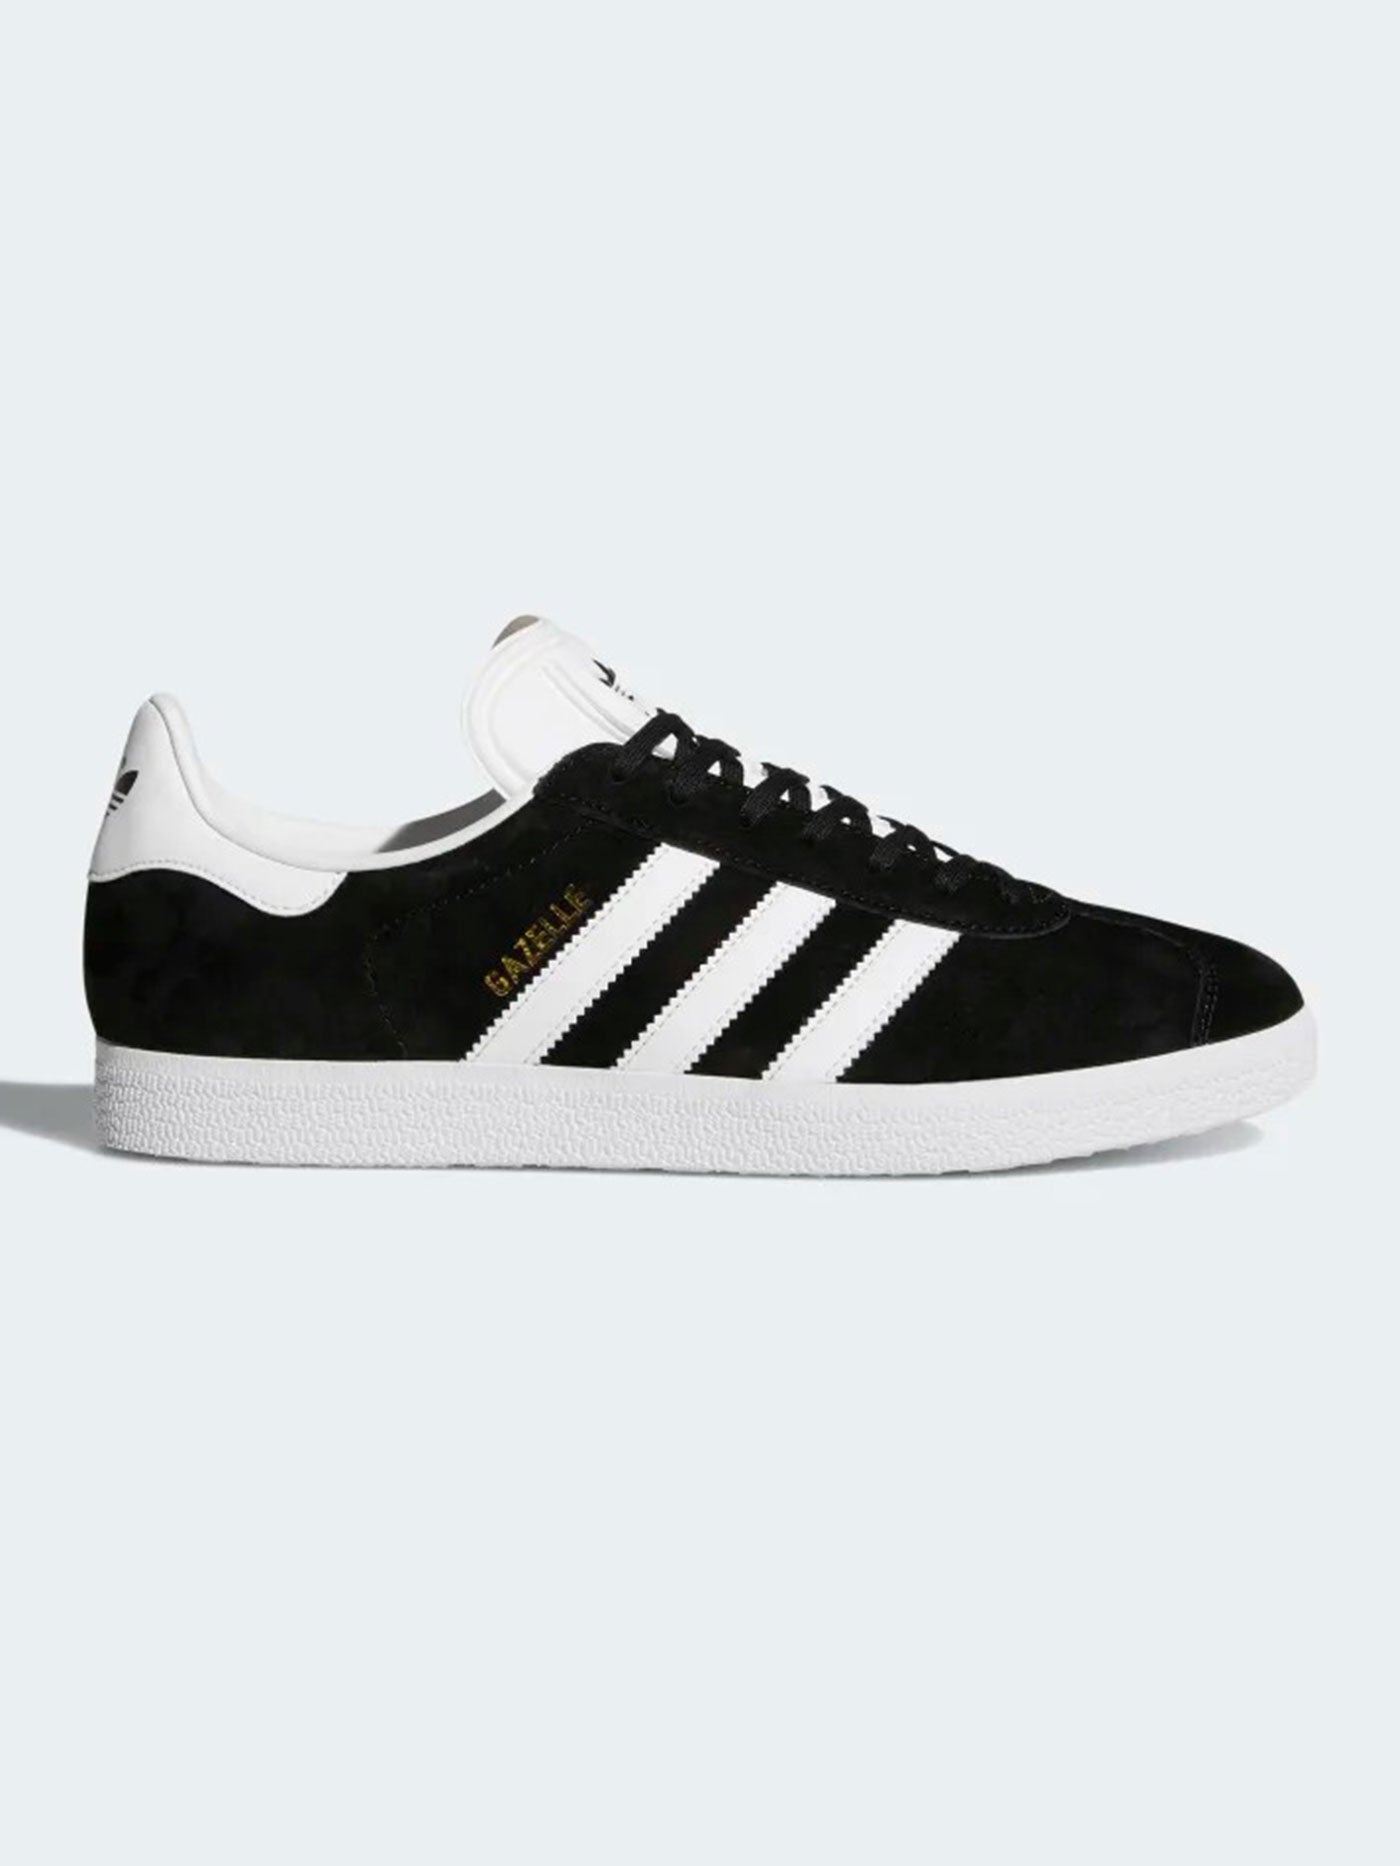 Adidas Fall 2022 Gazelle Core Black Shoes